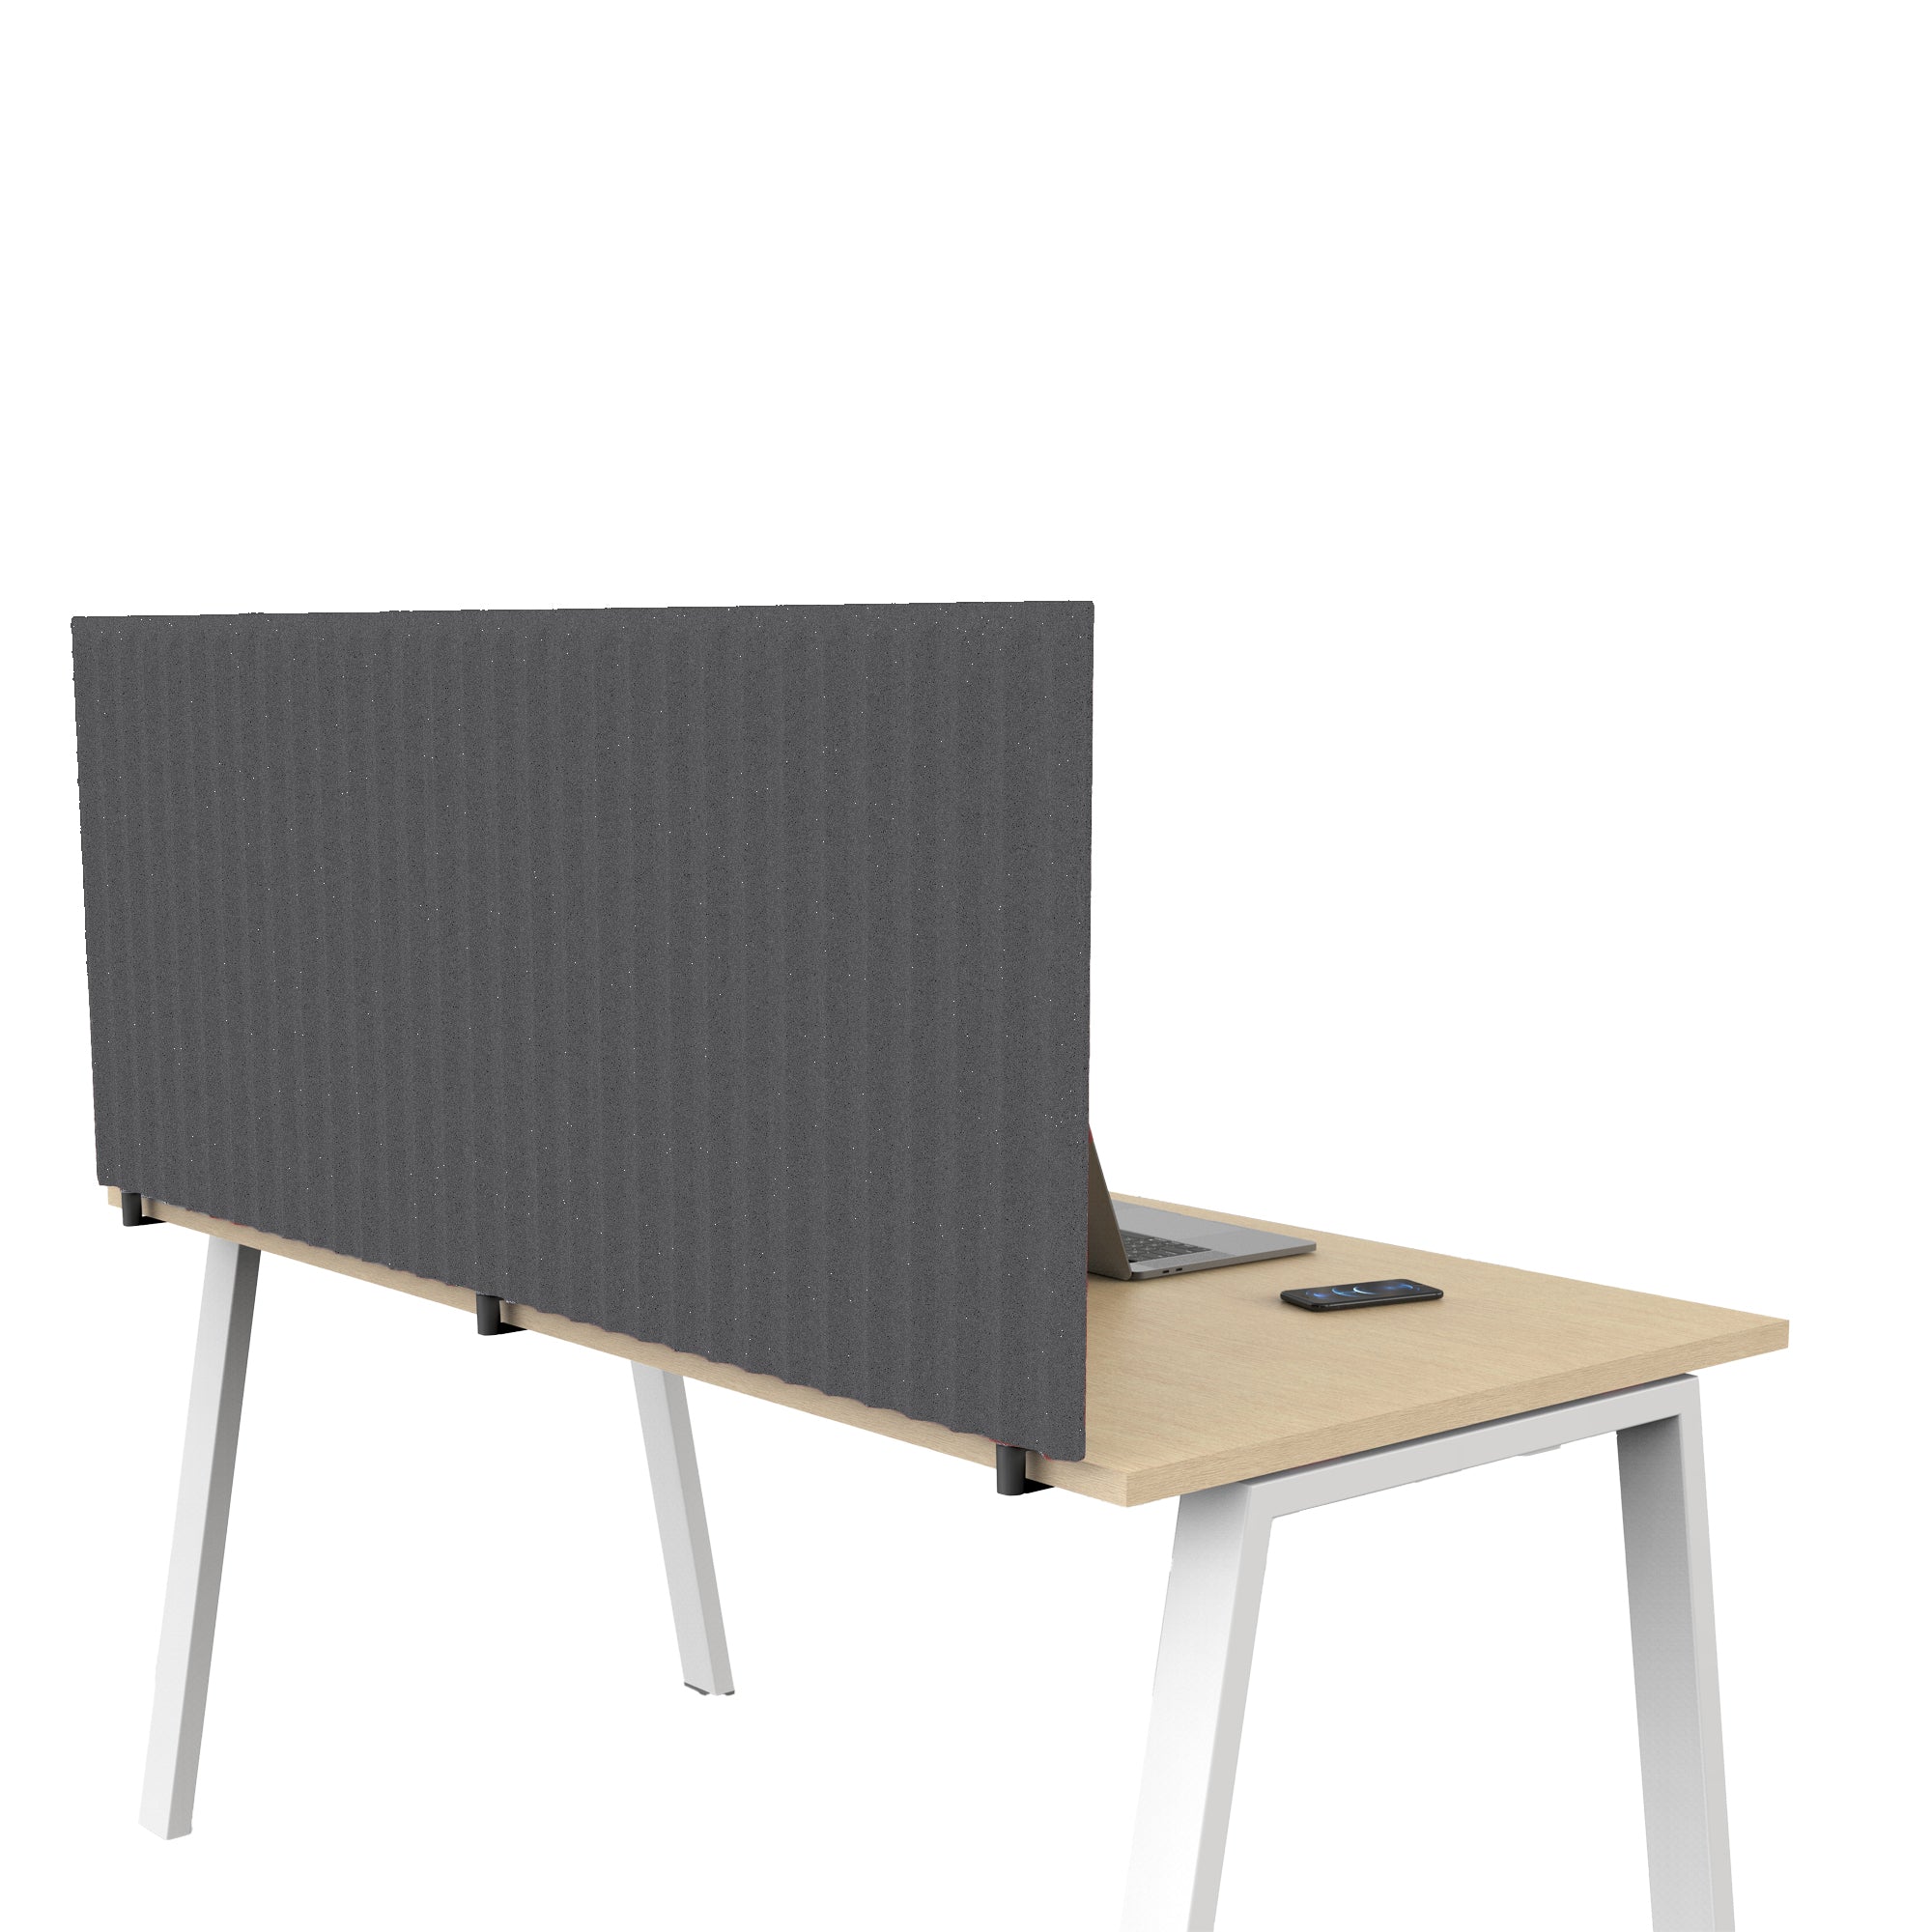 artexport-pannello-acustico-scrivania-l155xh40cm-c-morsetti-neri-grigio-medio-stripes